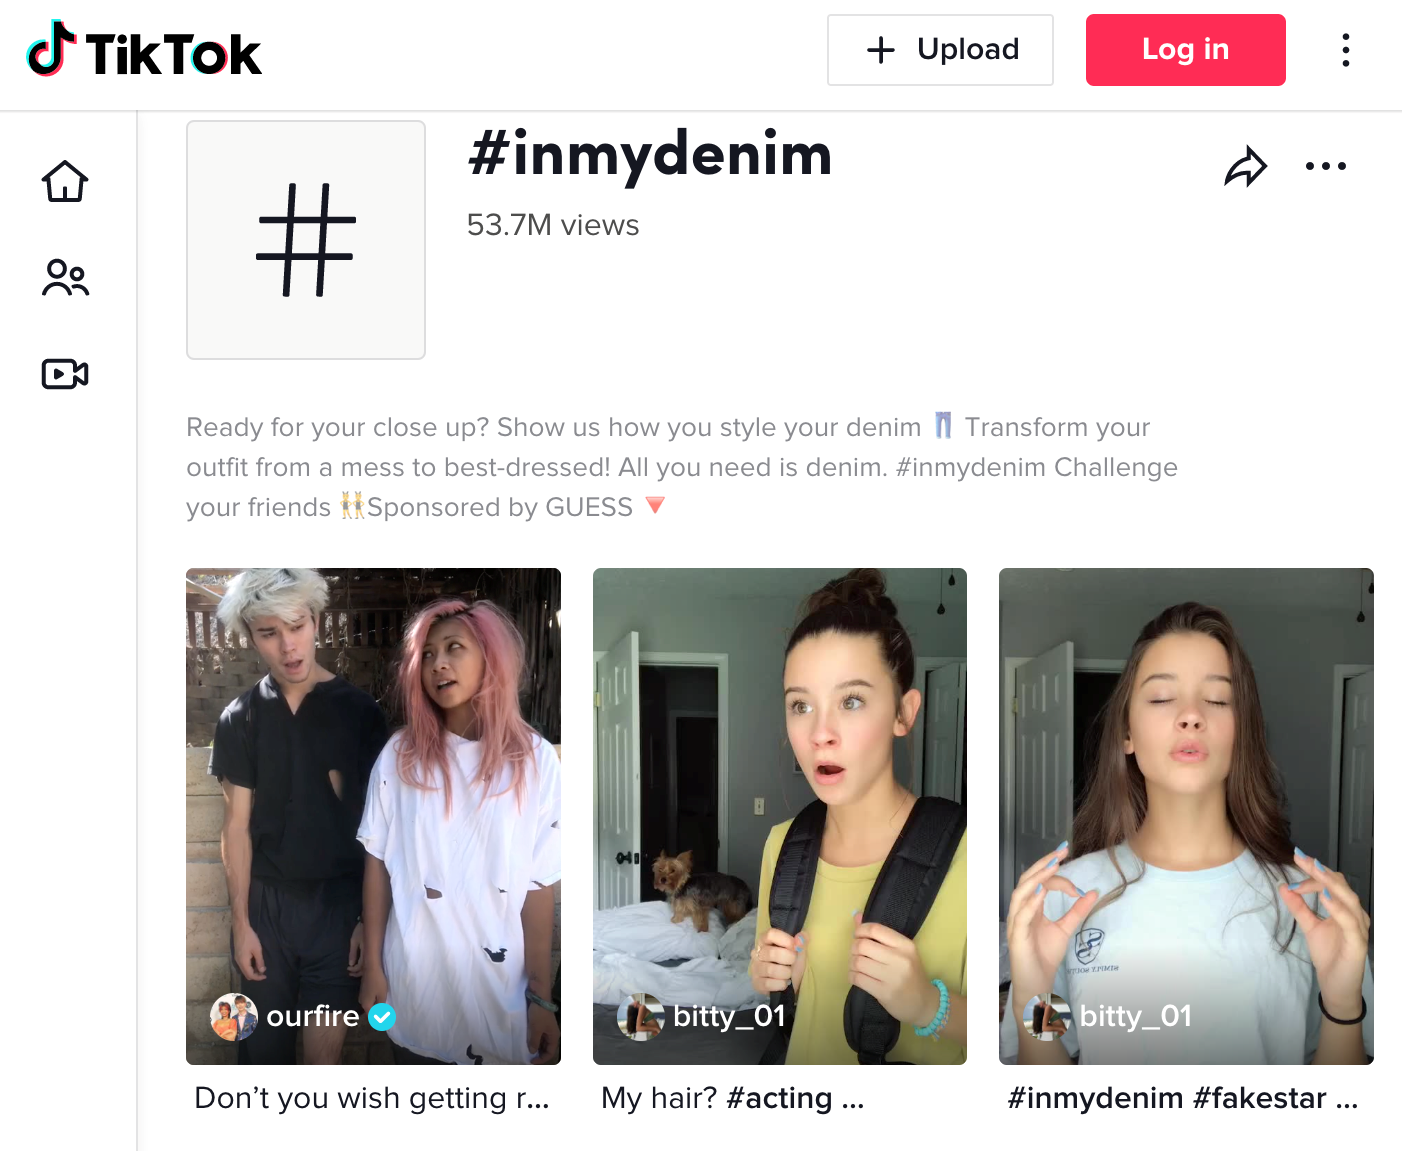 Para la publicidad en TikTok es importante seguir las tendencias virales